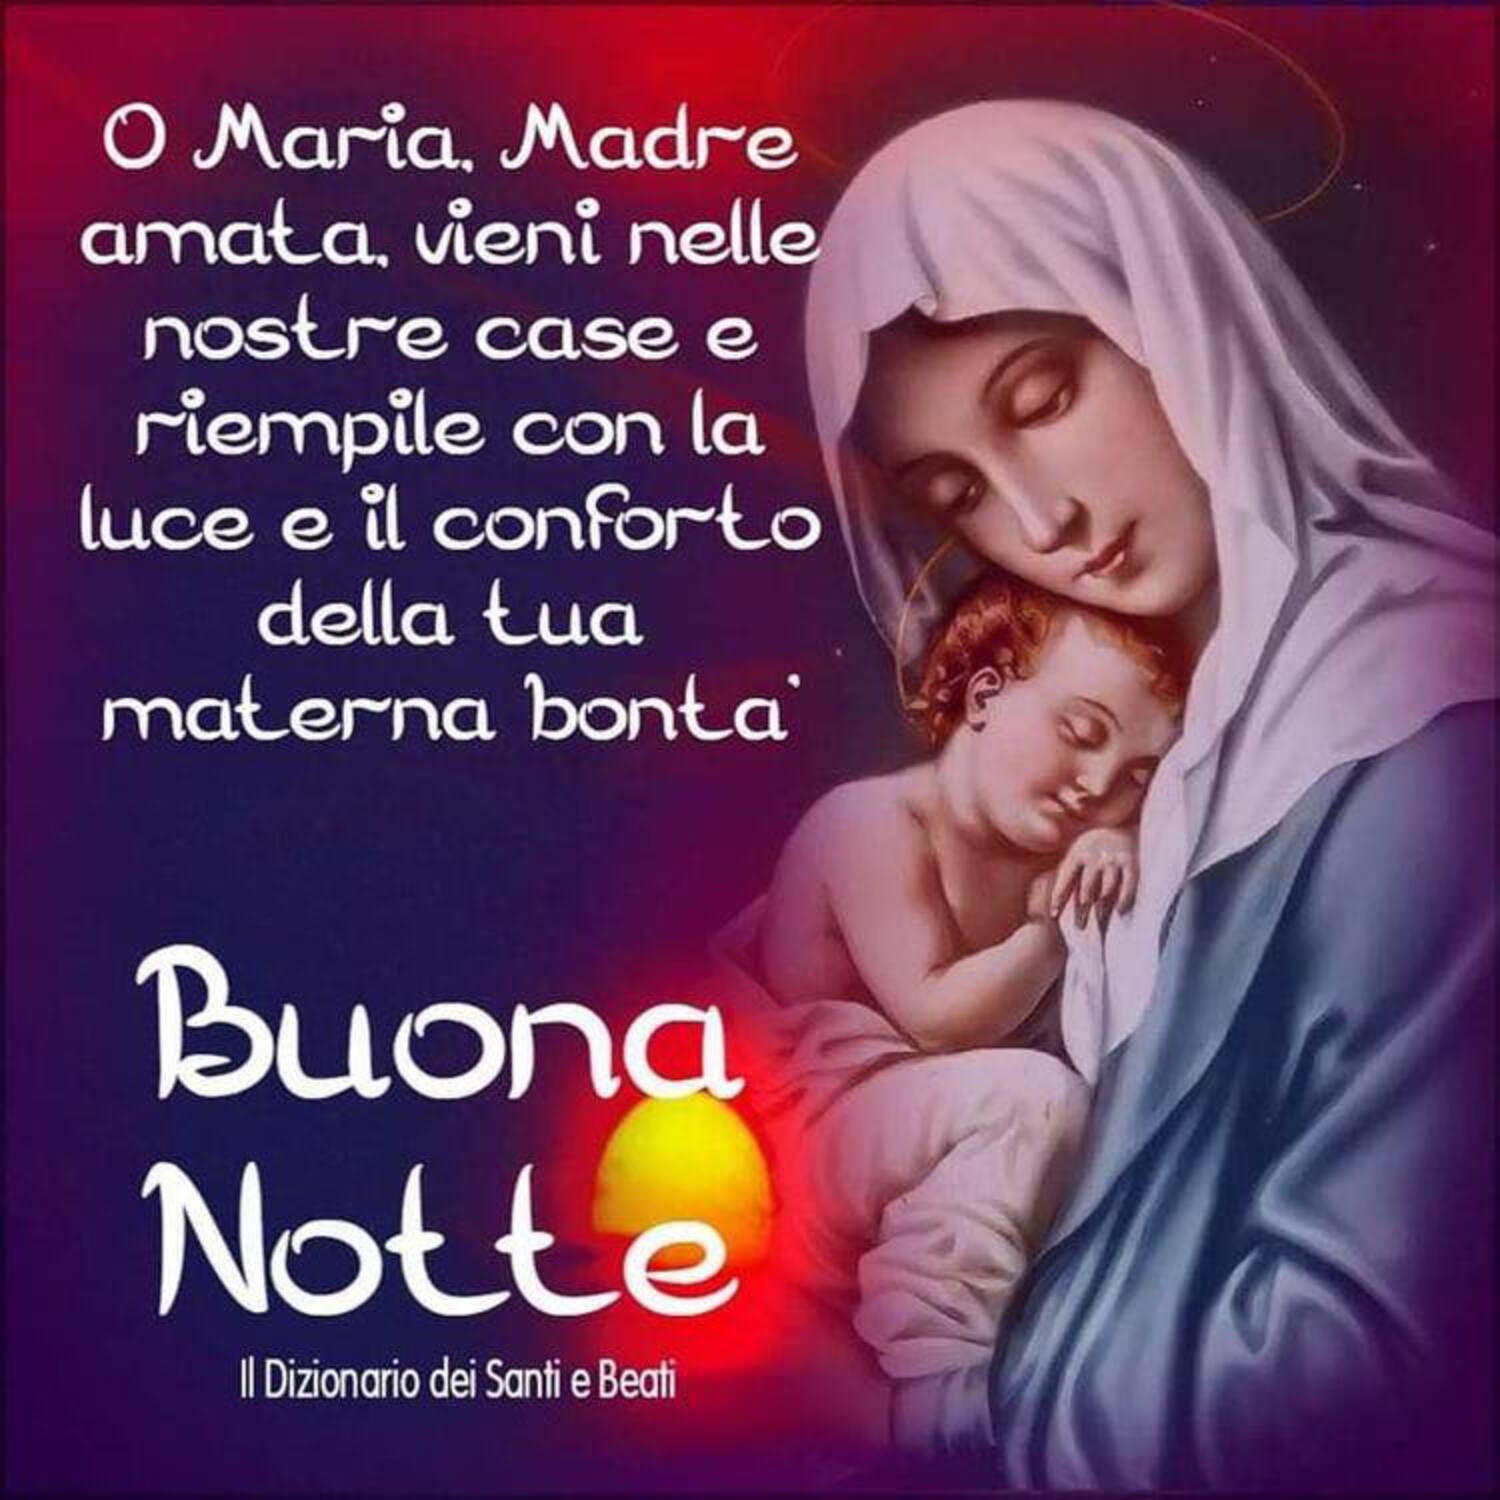 O Maria Madre amata vieni nelle nostre case e riempile con la luce Buona Notte